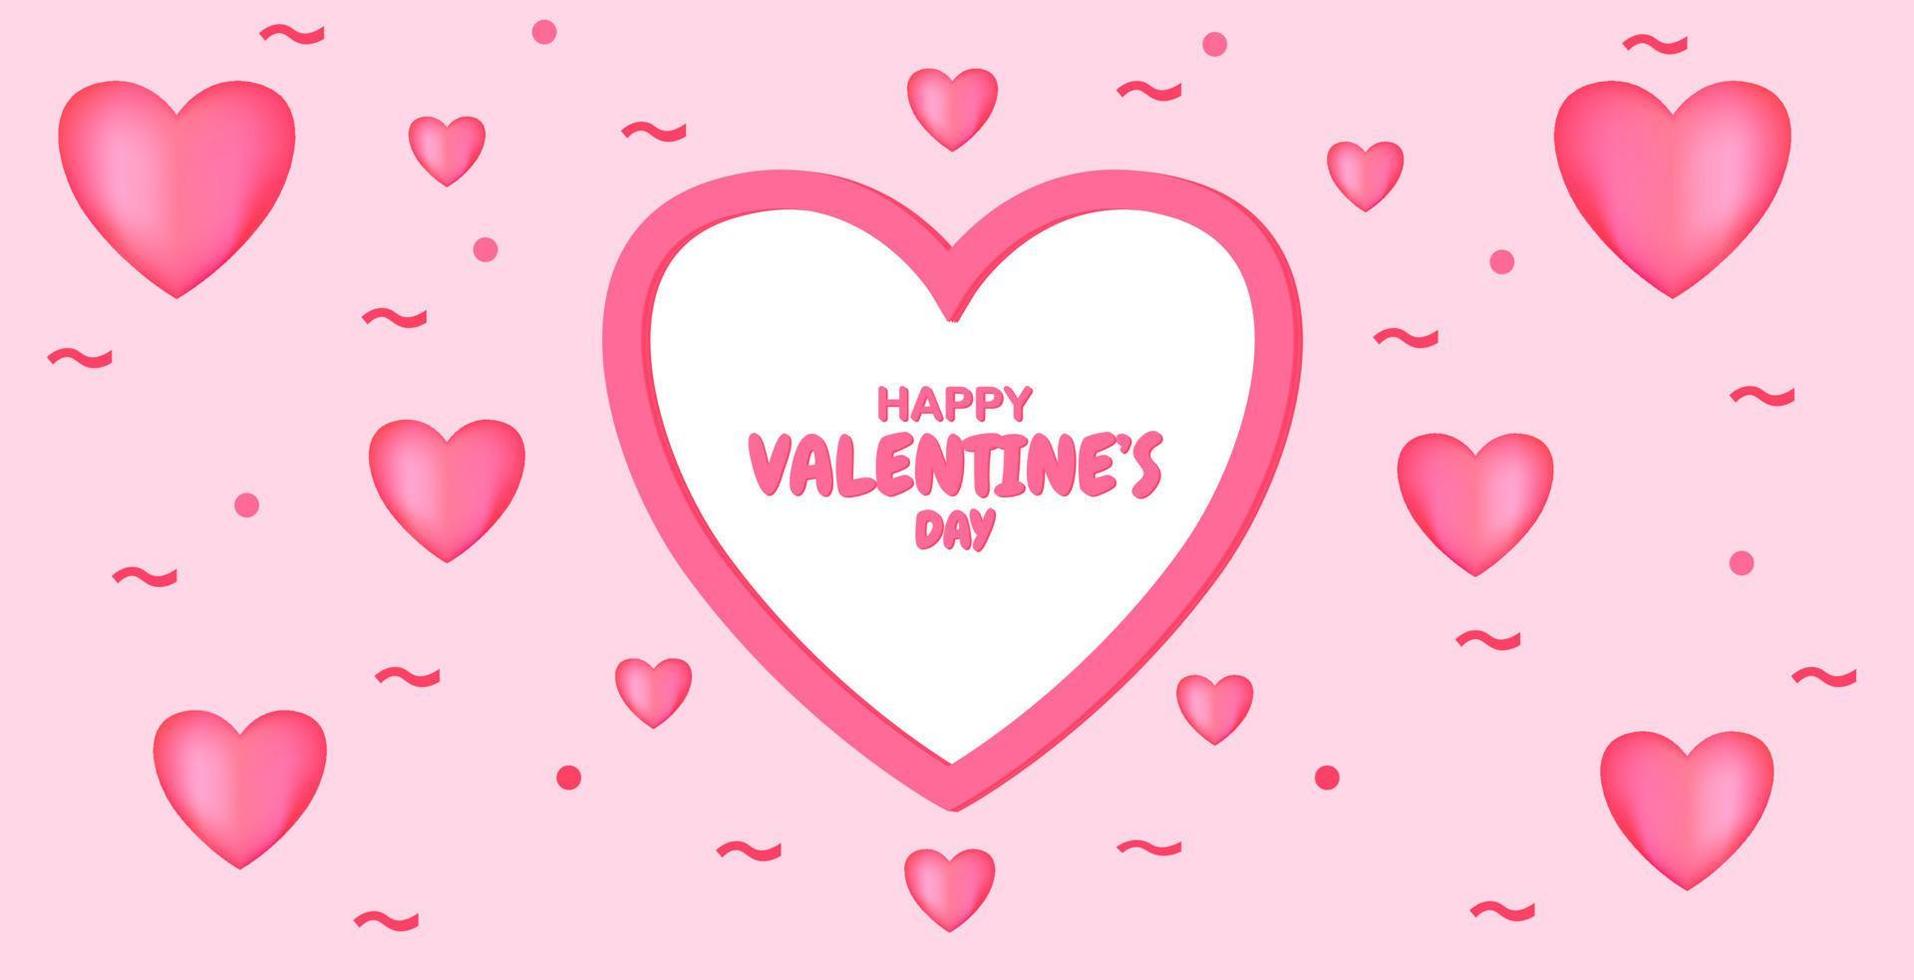 diseño de pancarta de felicitación del día de san valentín rosa. Diseño de corazón 3d en color rosa. diseños para la celebración de san valentin 2021. vector